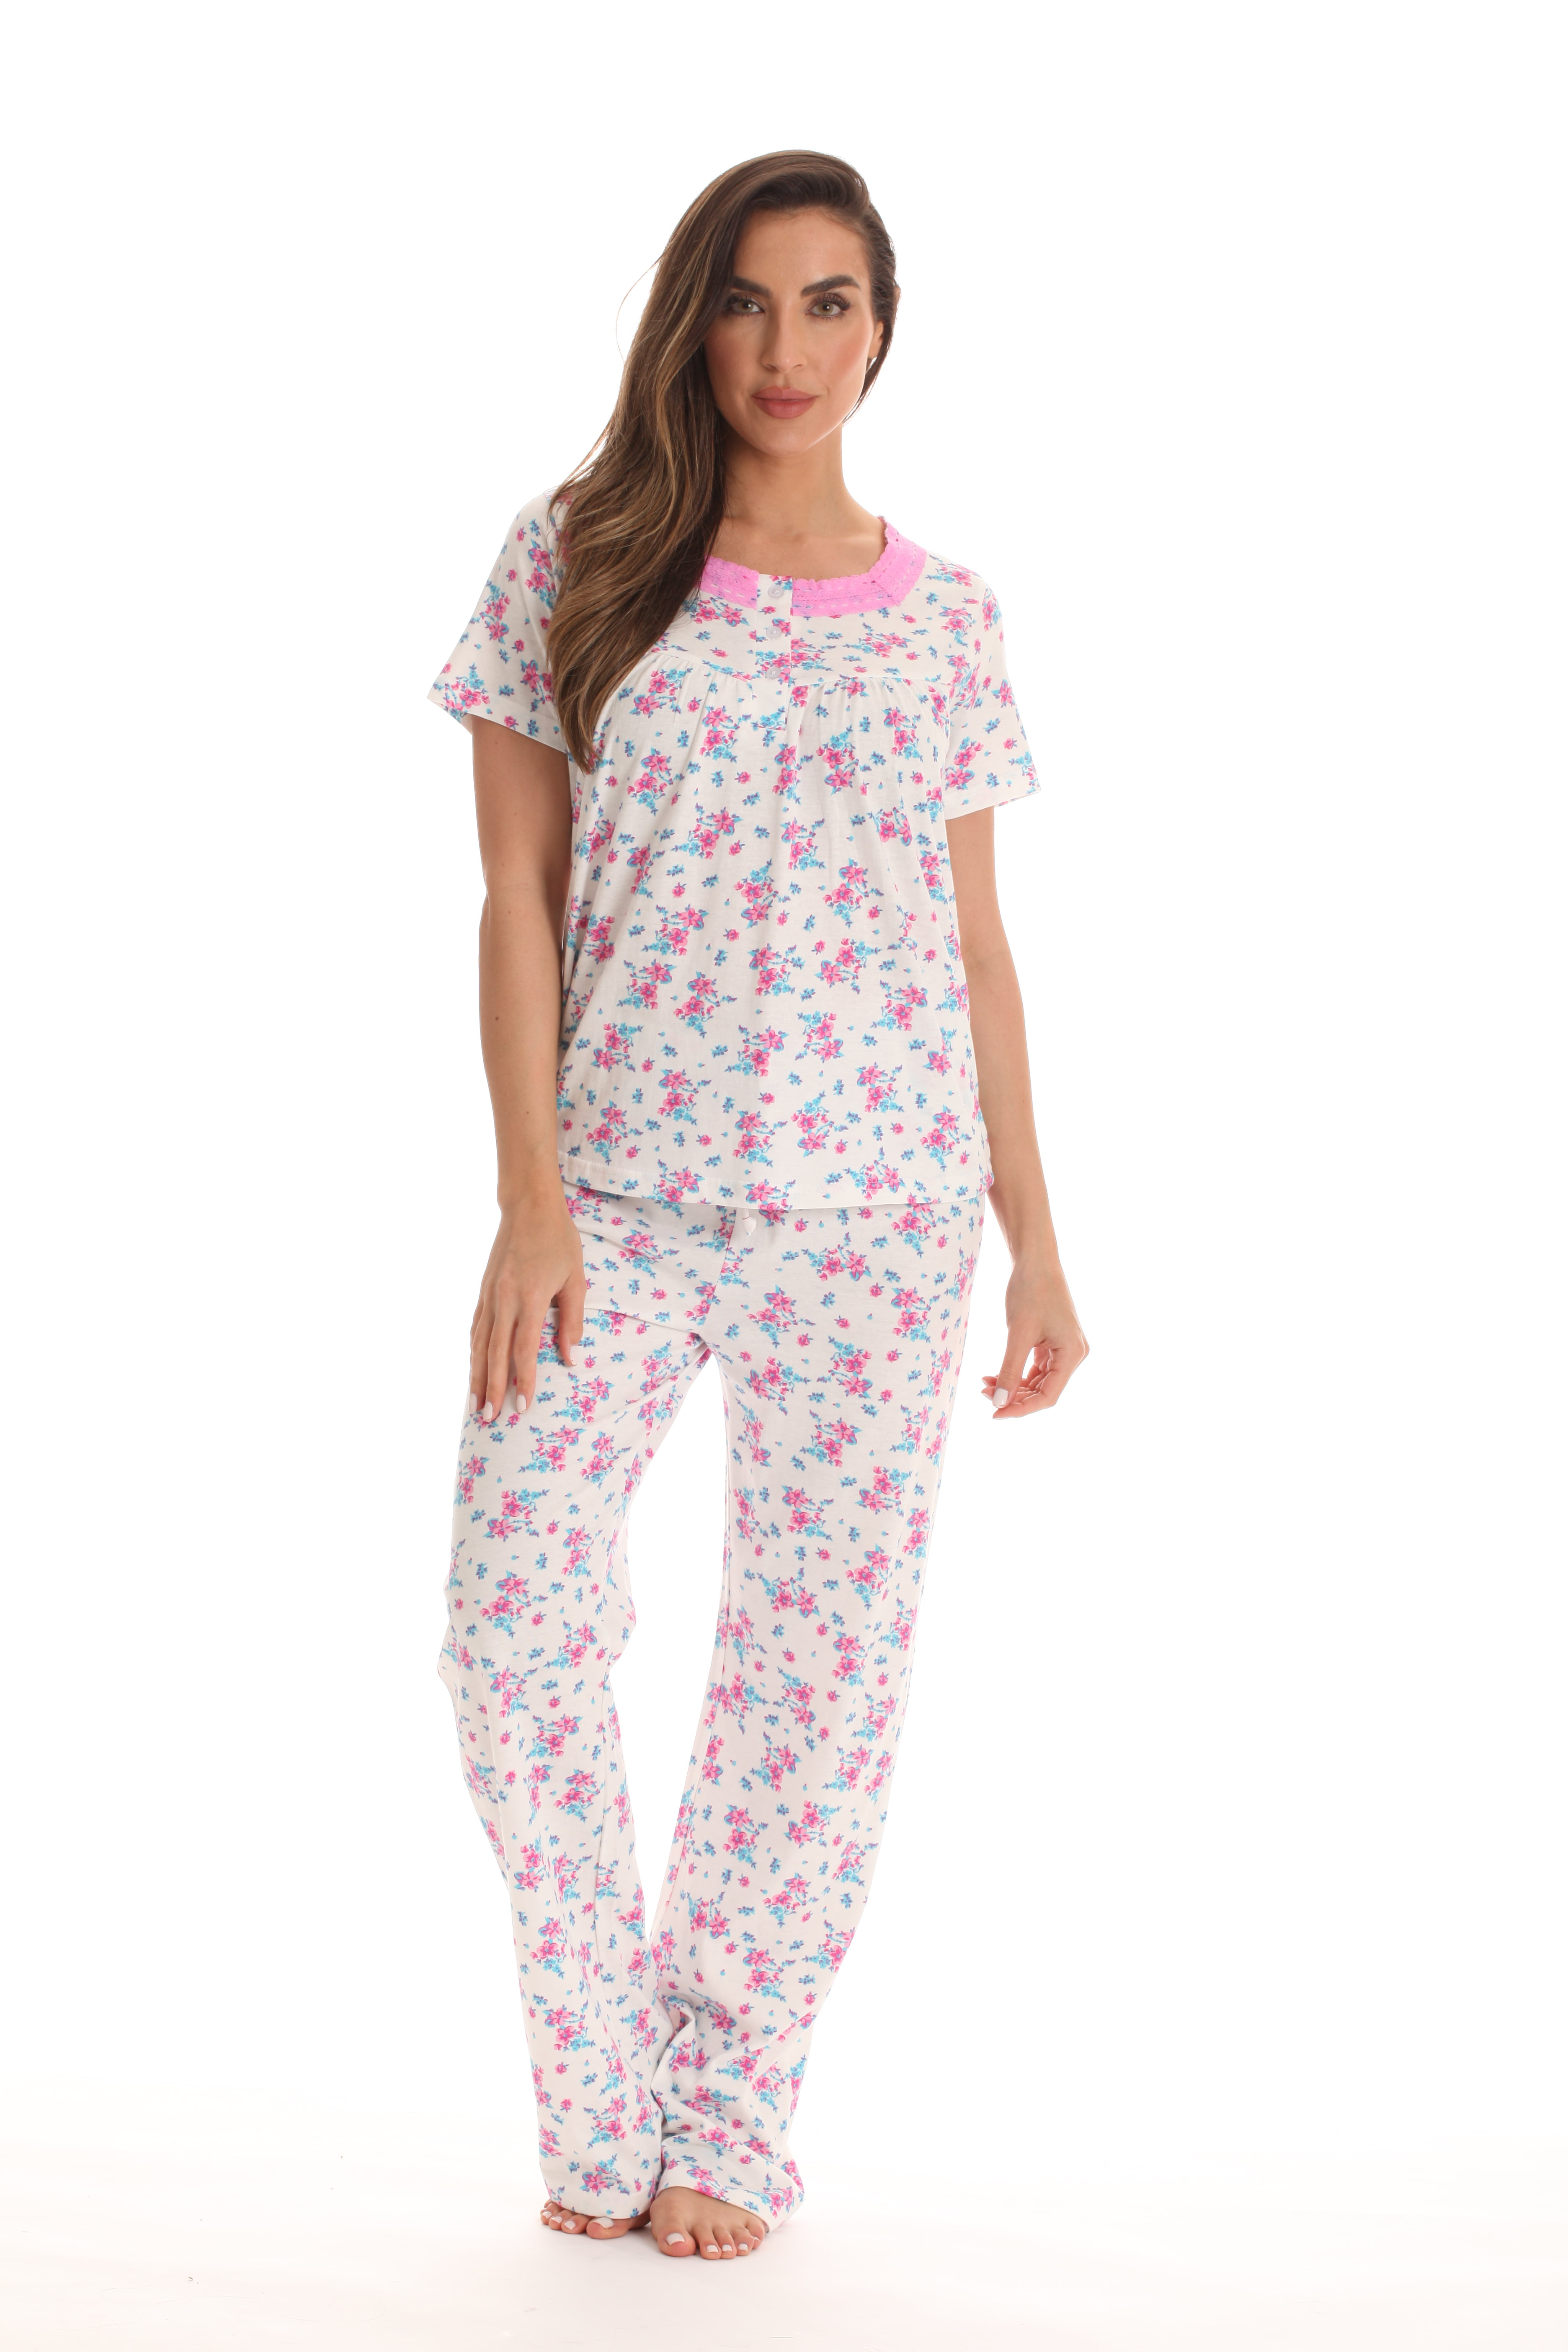 Dreamcrest 100% Cotton Pajama Pant Set for Women (Pink, 2X) - Walmart.com